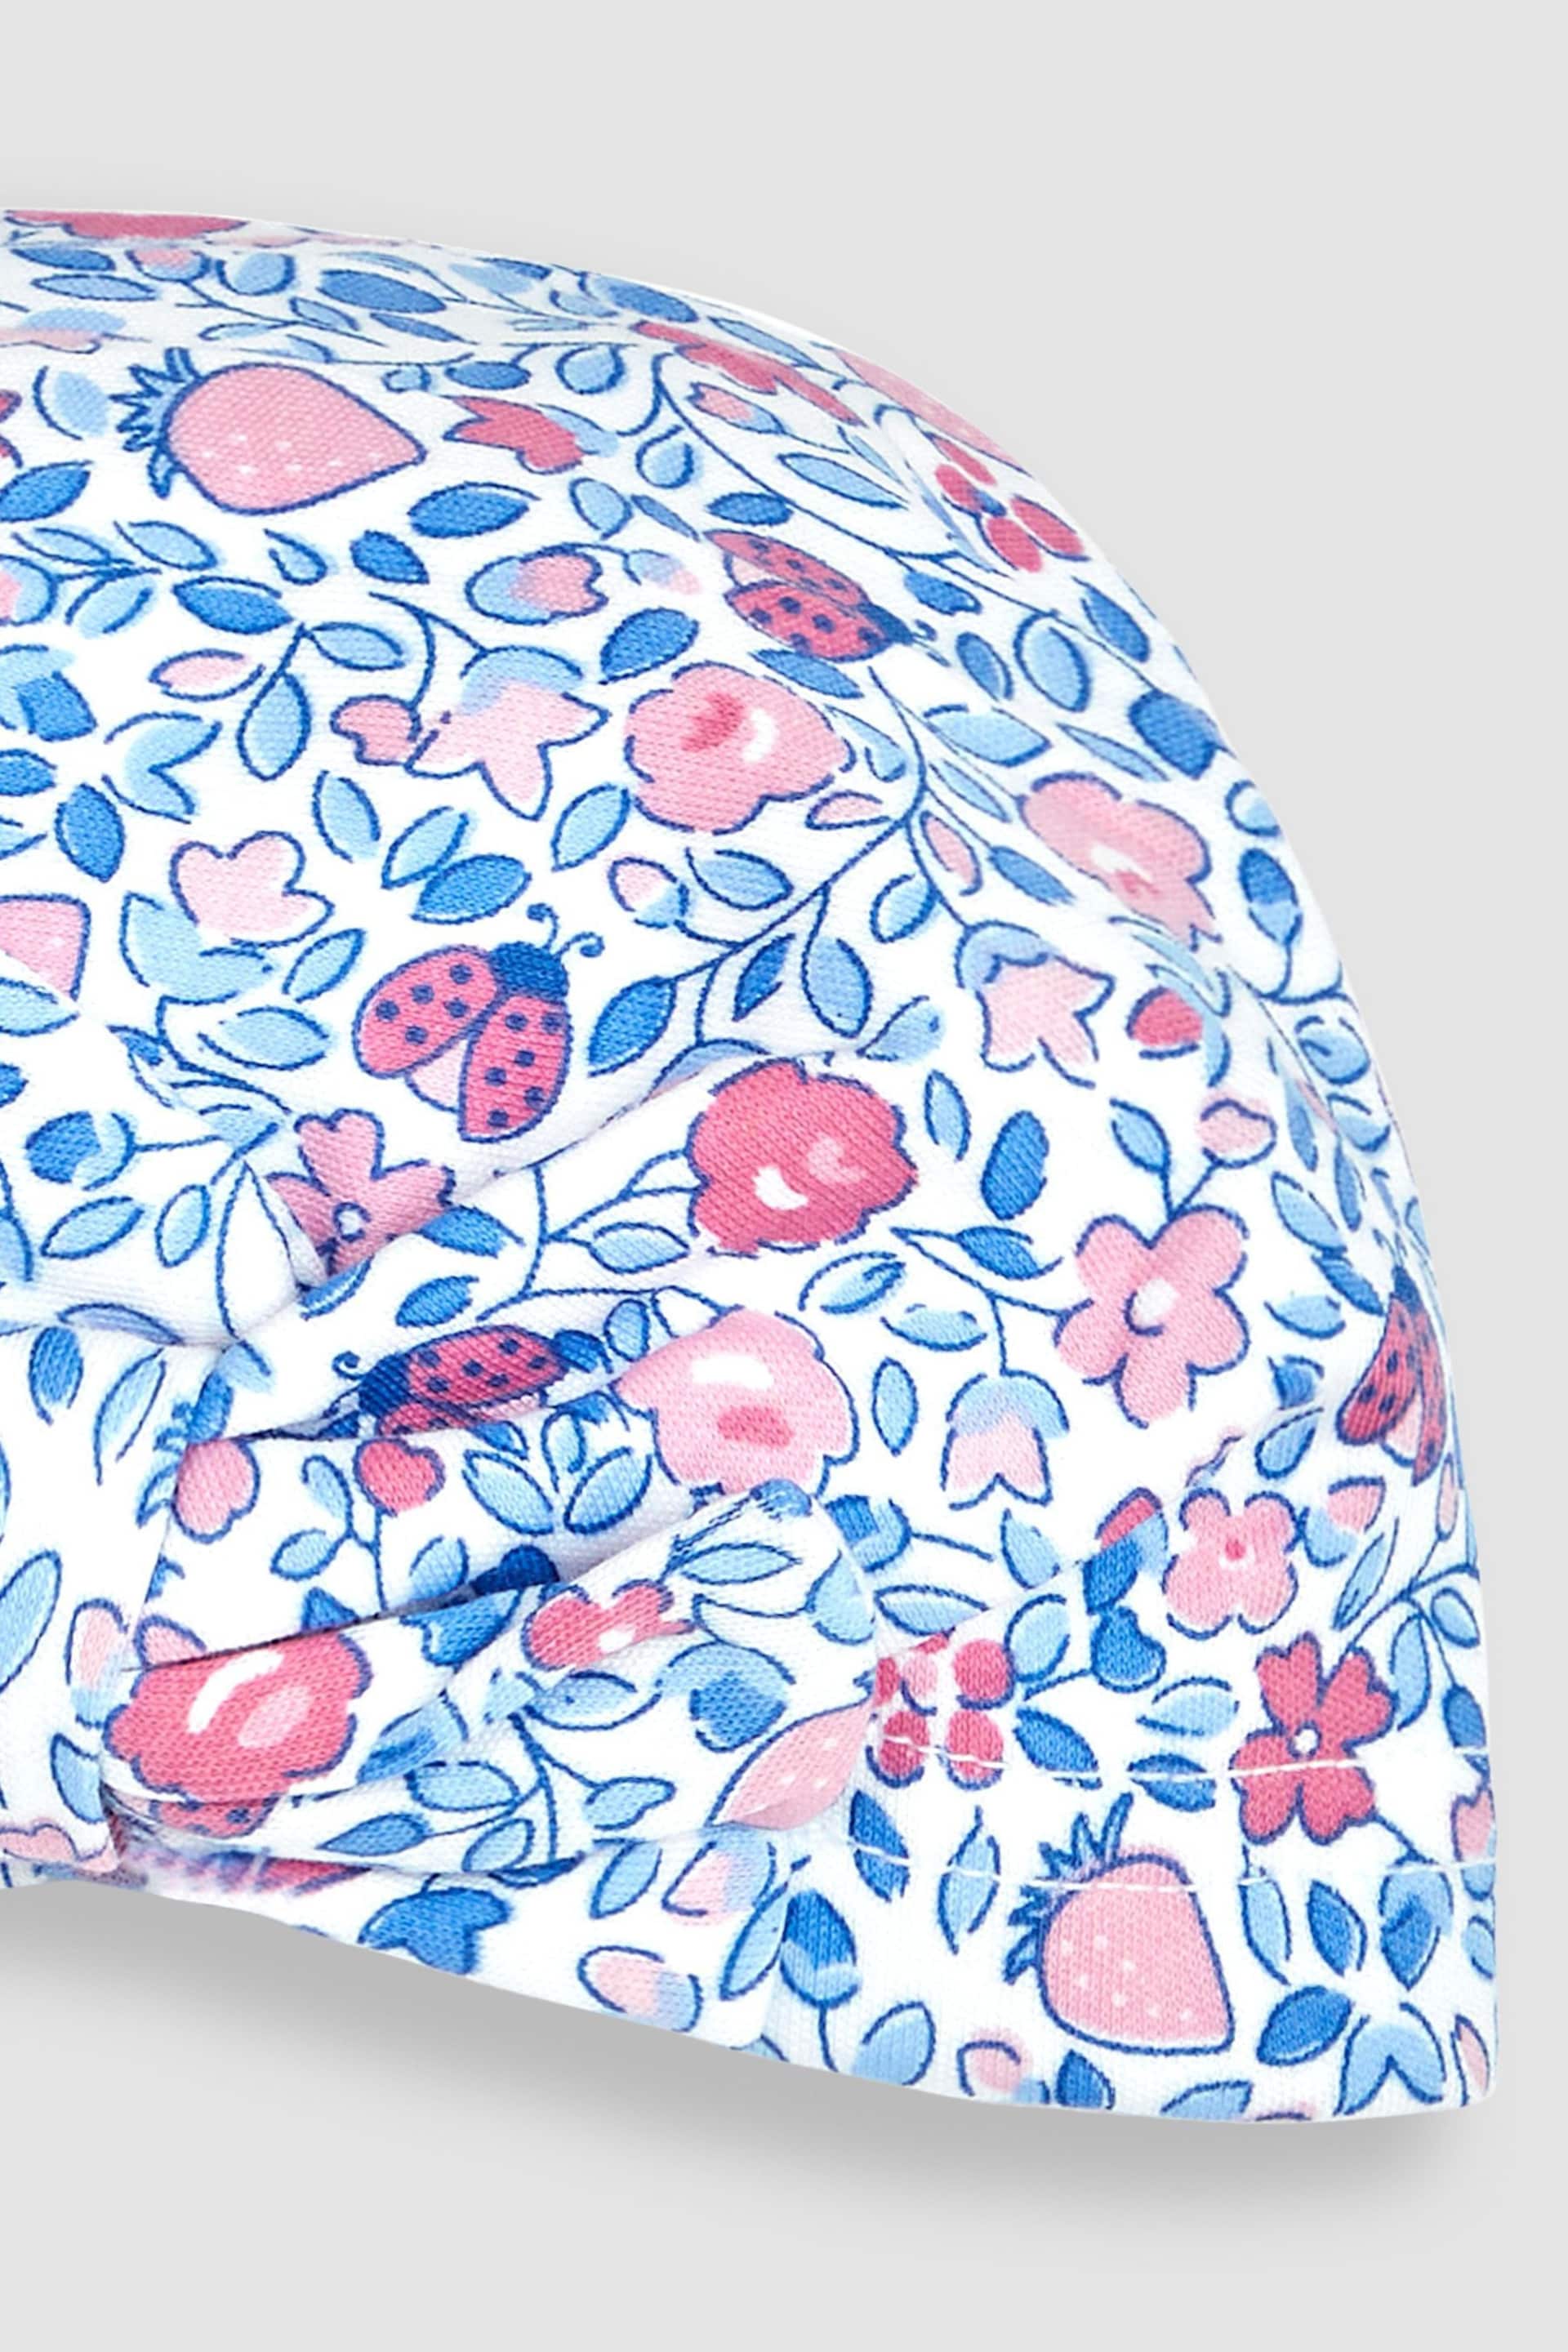 JoJo Maman Bébé Pink Ladybird Floral Print Turban - Image 2 of 3